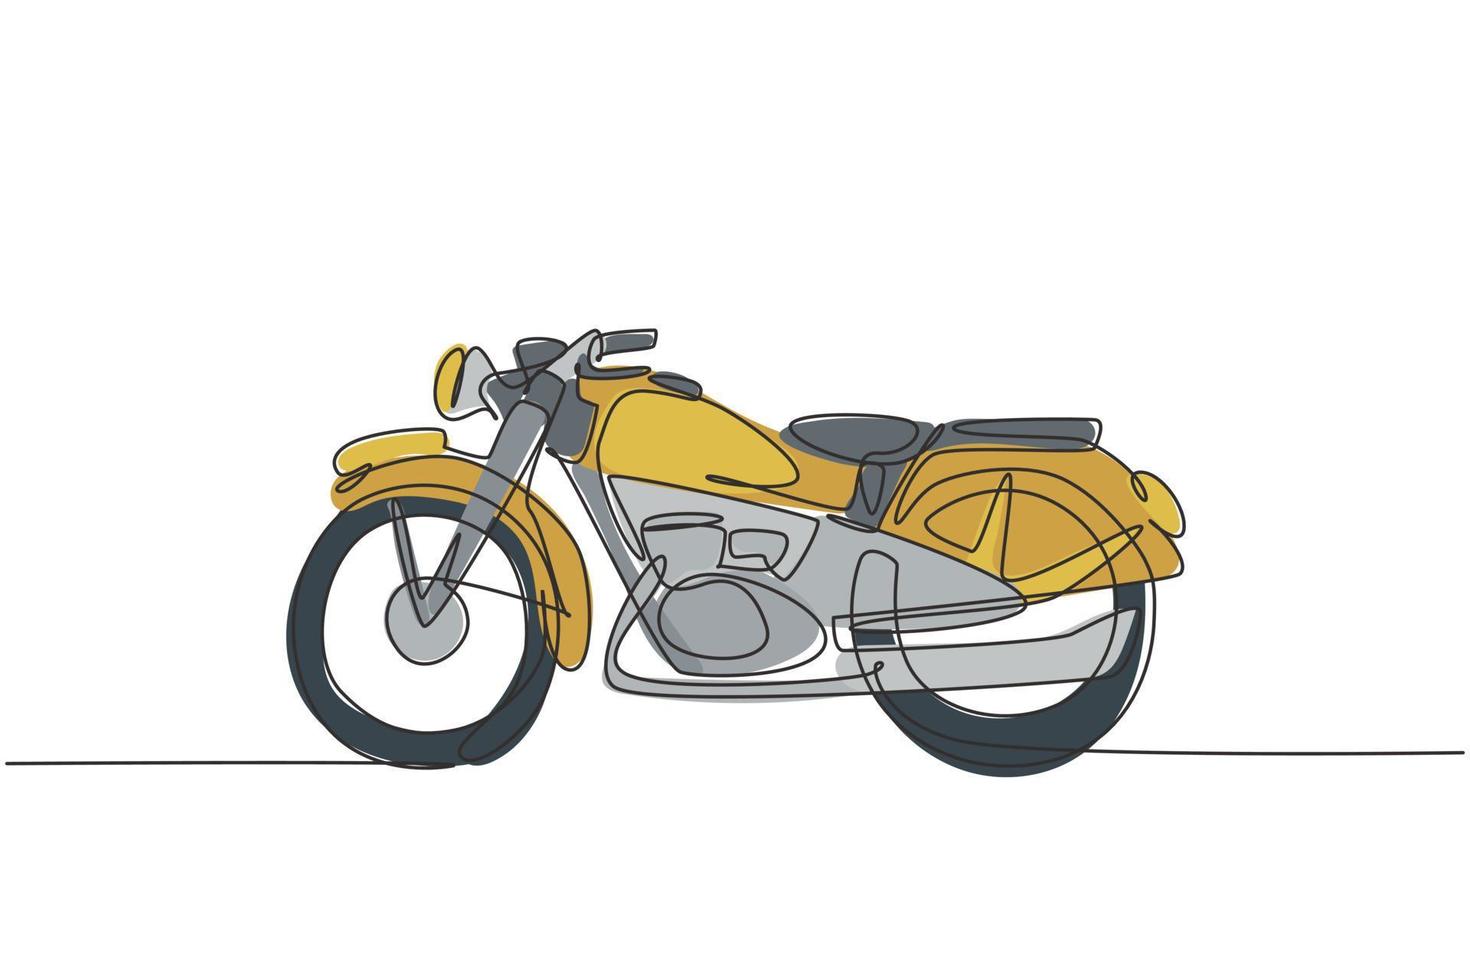 dibujo de línea continua única del antiguo símbolo clásico de la motocicleta vintage. Concepto de transporte de moto retro ilustración gráfica de vector de diseño de dibujo de una línea